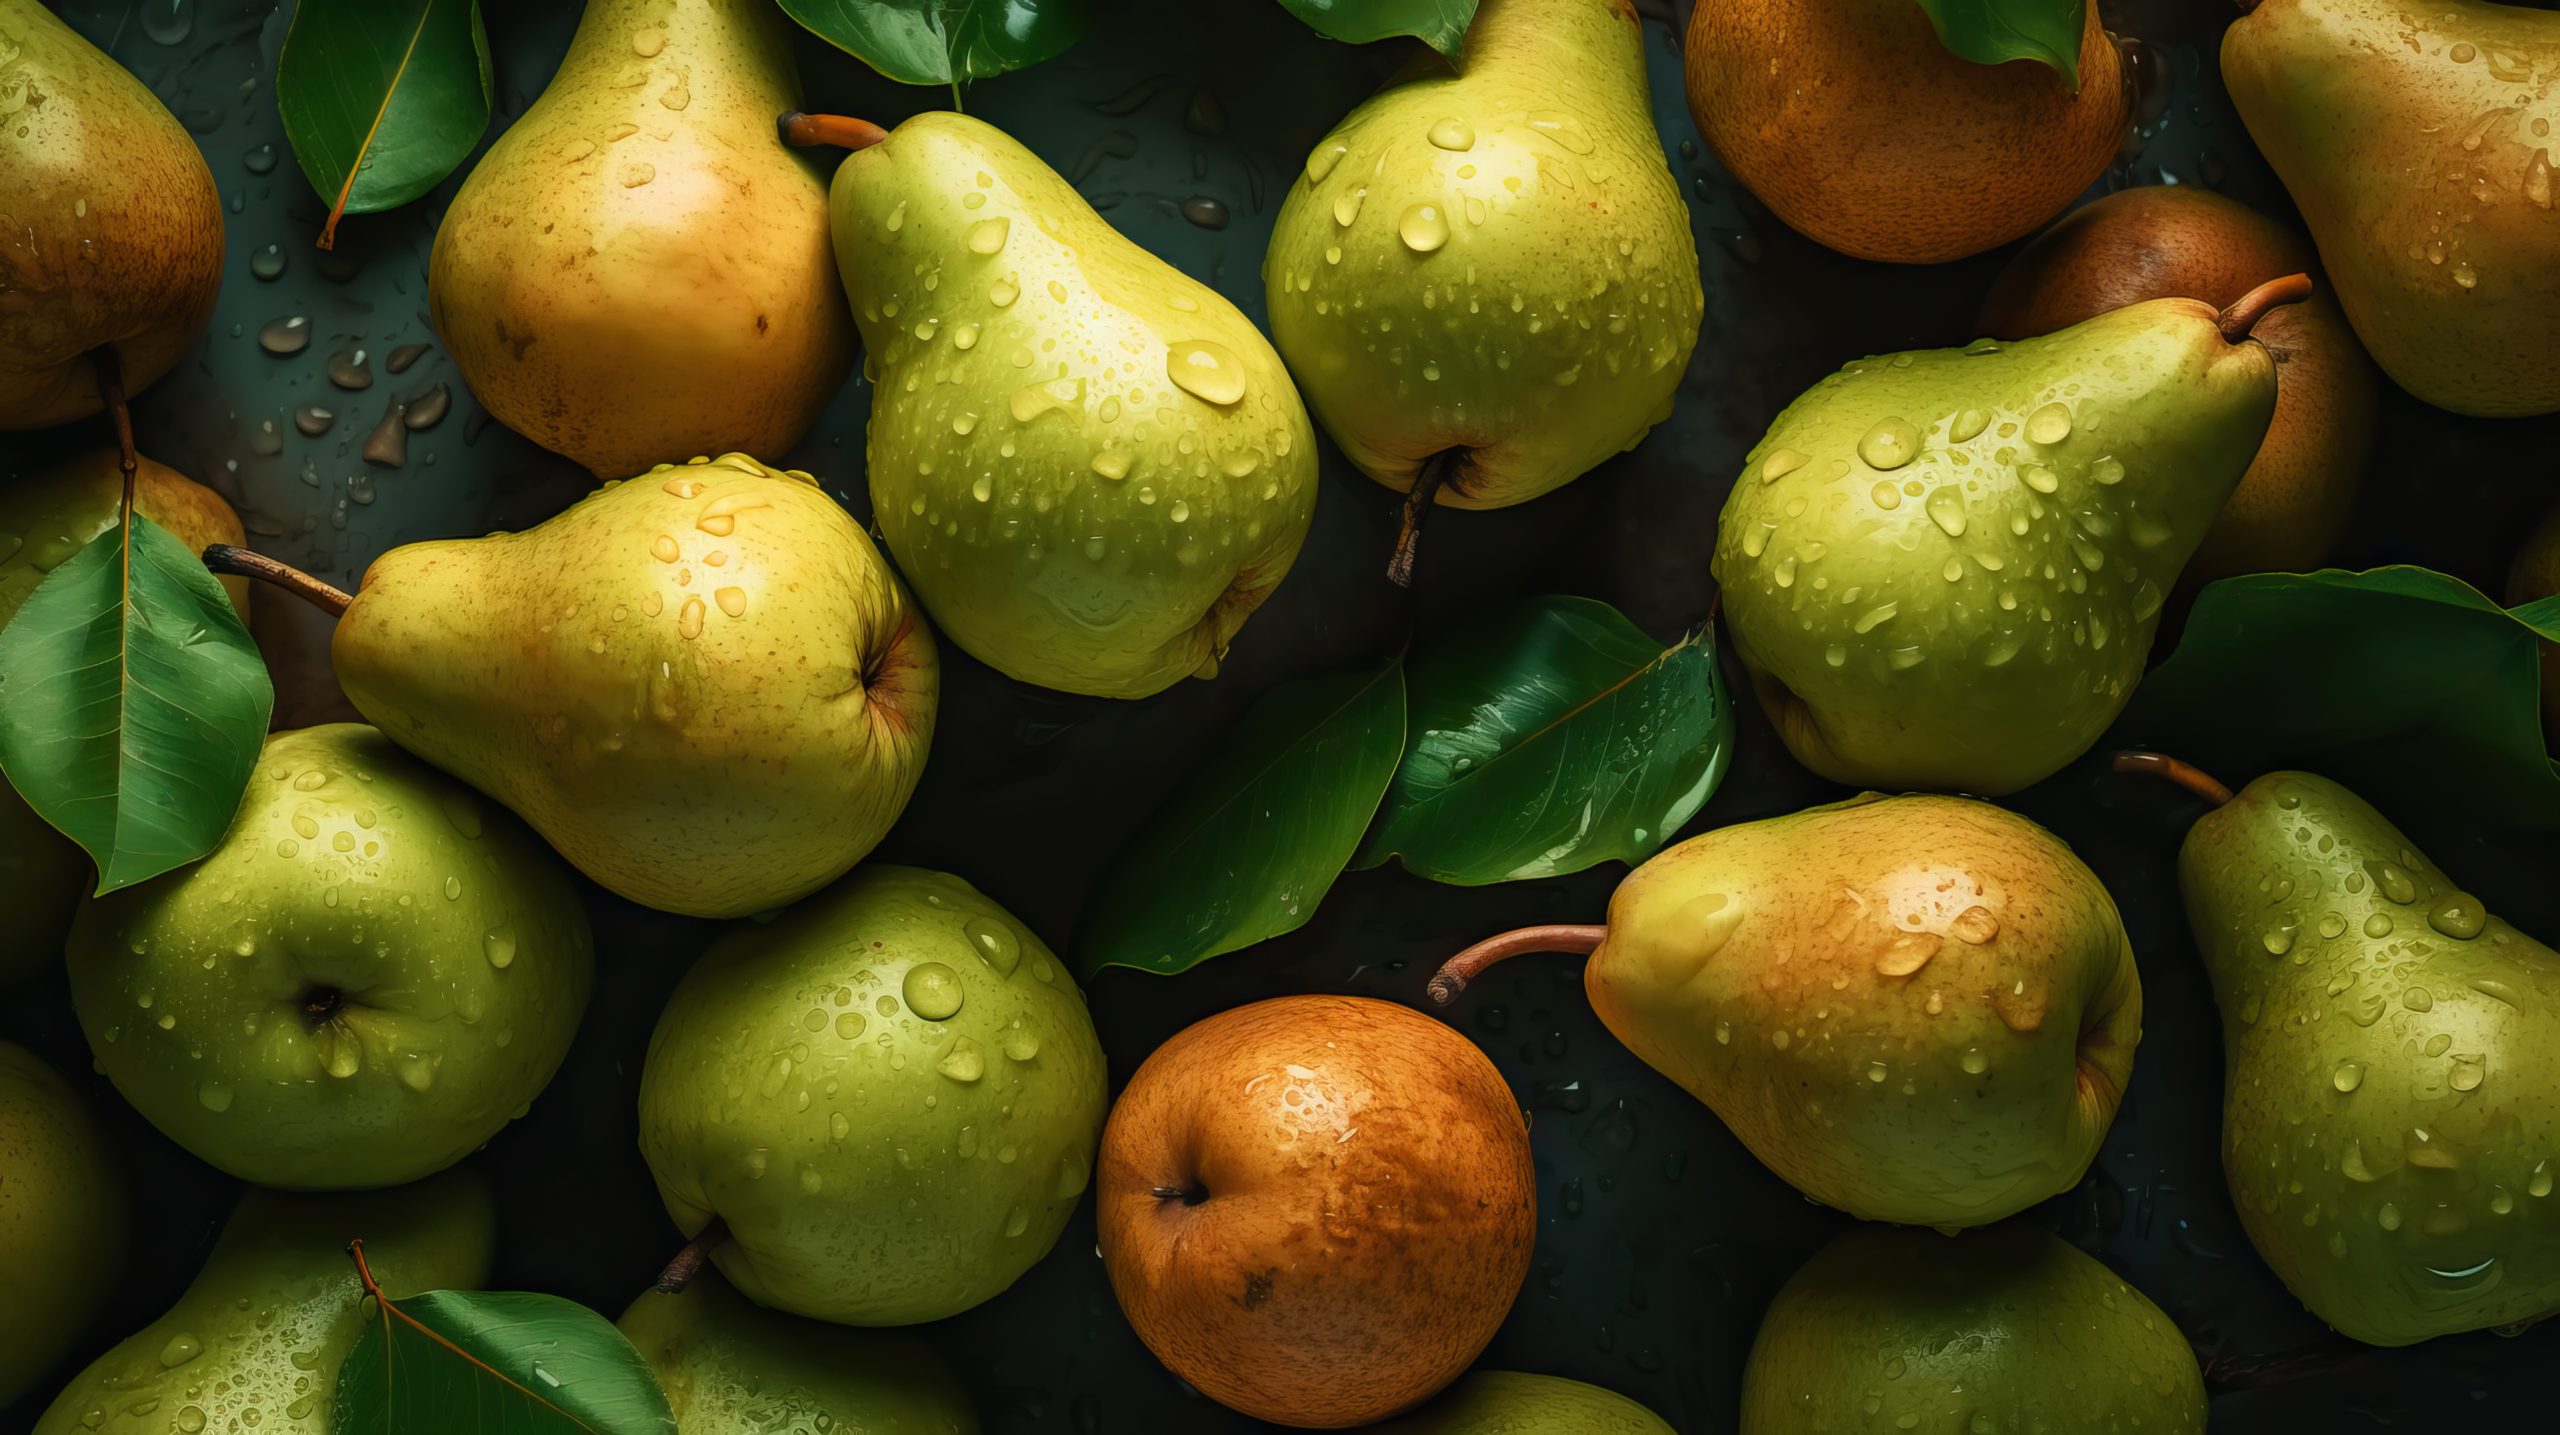 La pera, una fruta con sabor dulce y extraordinarias propiedades nutricionales